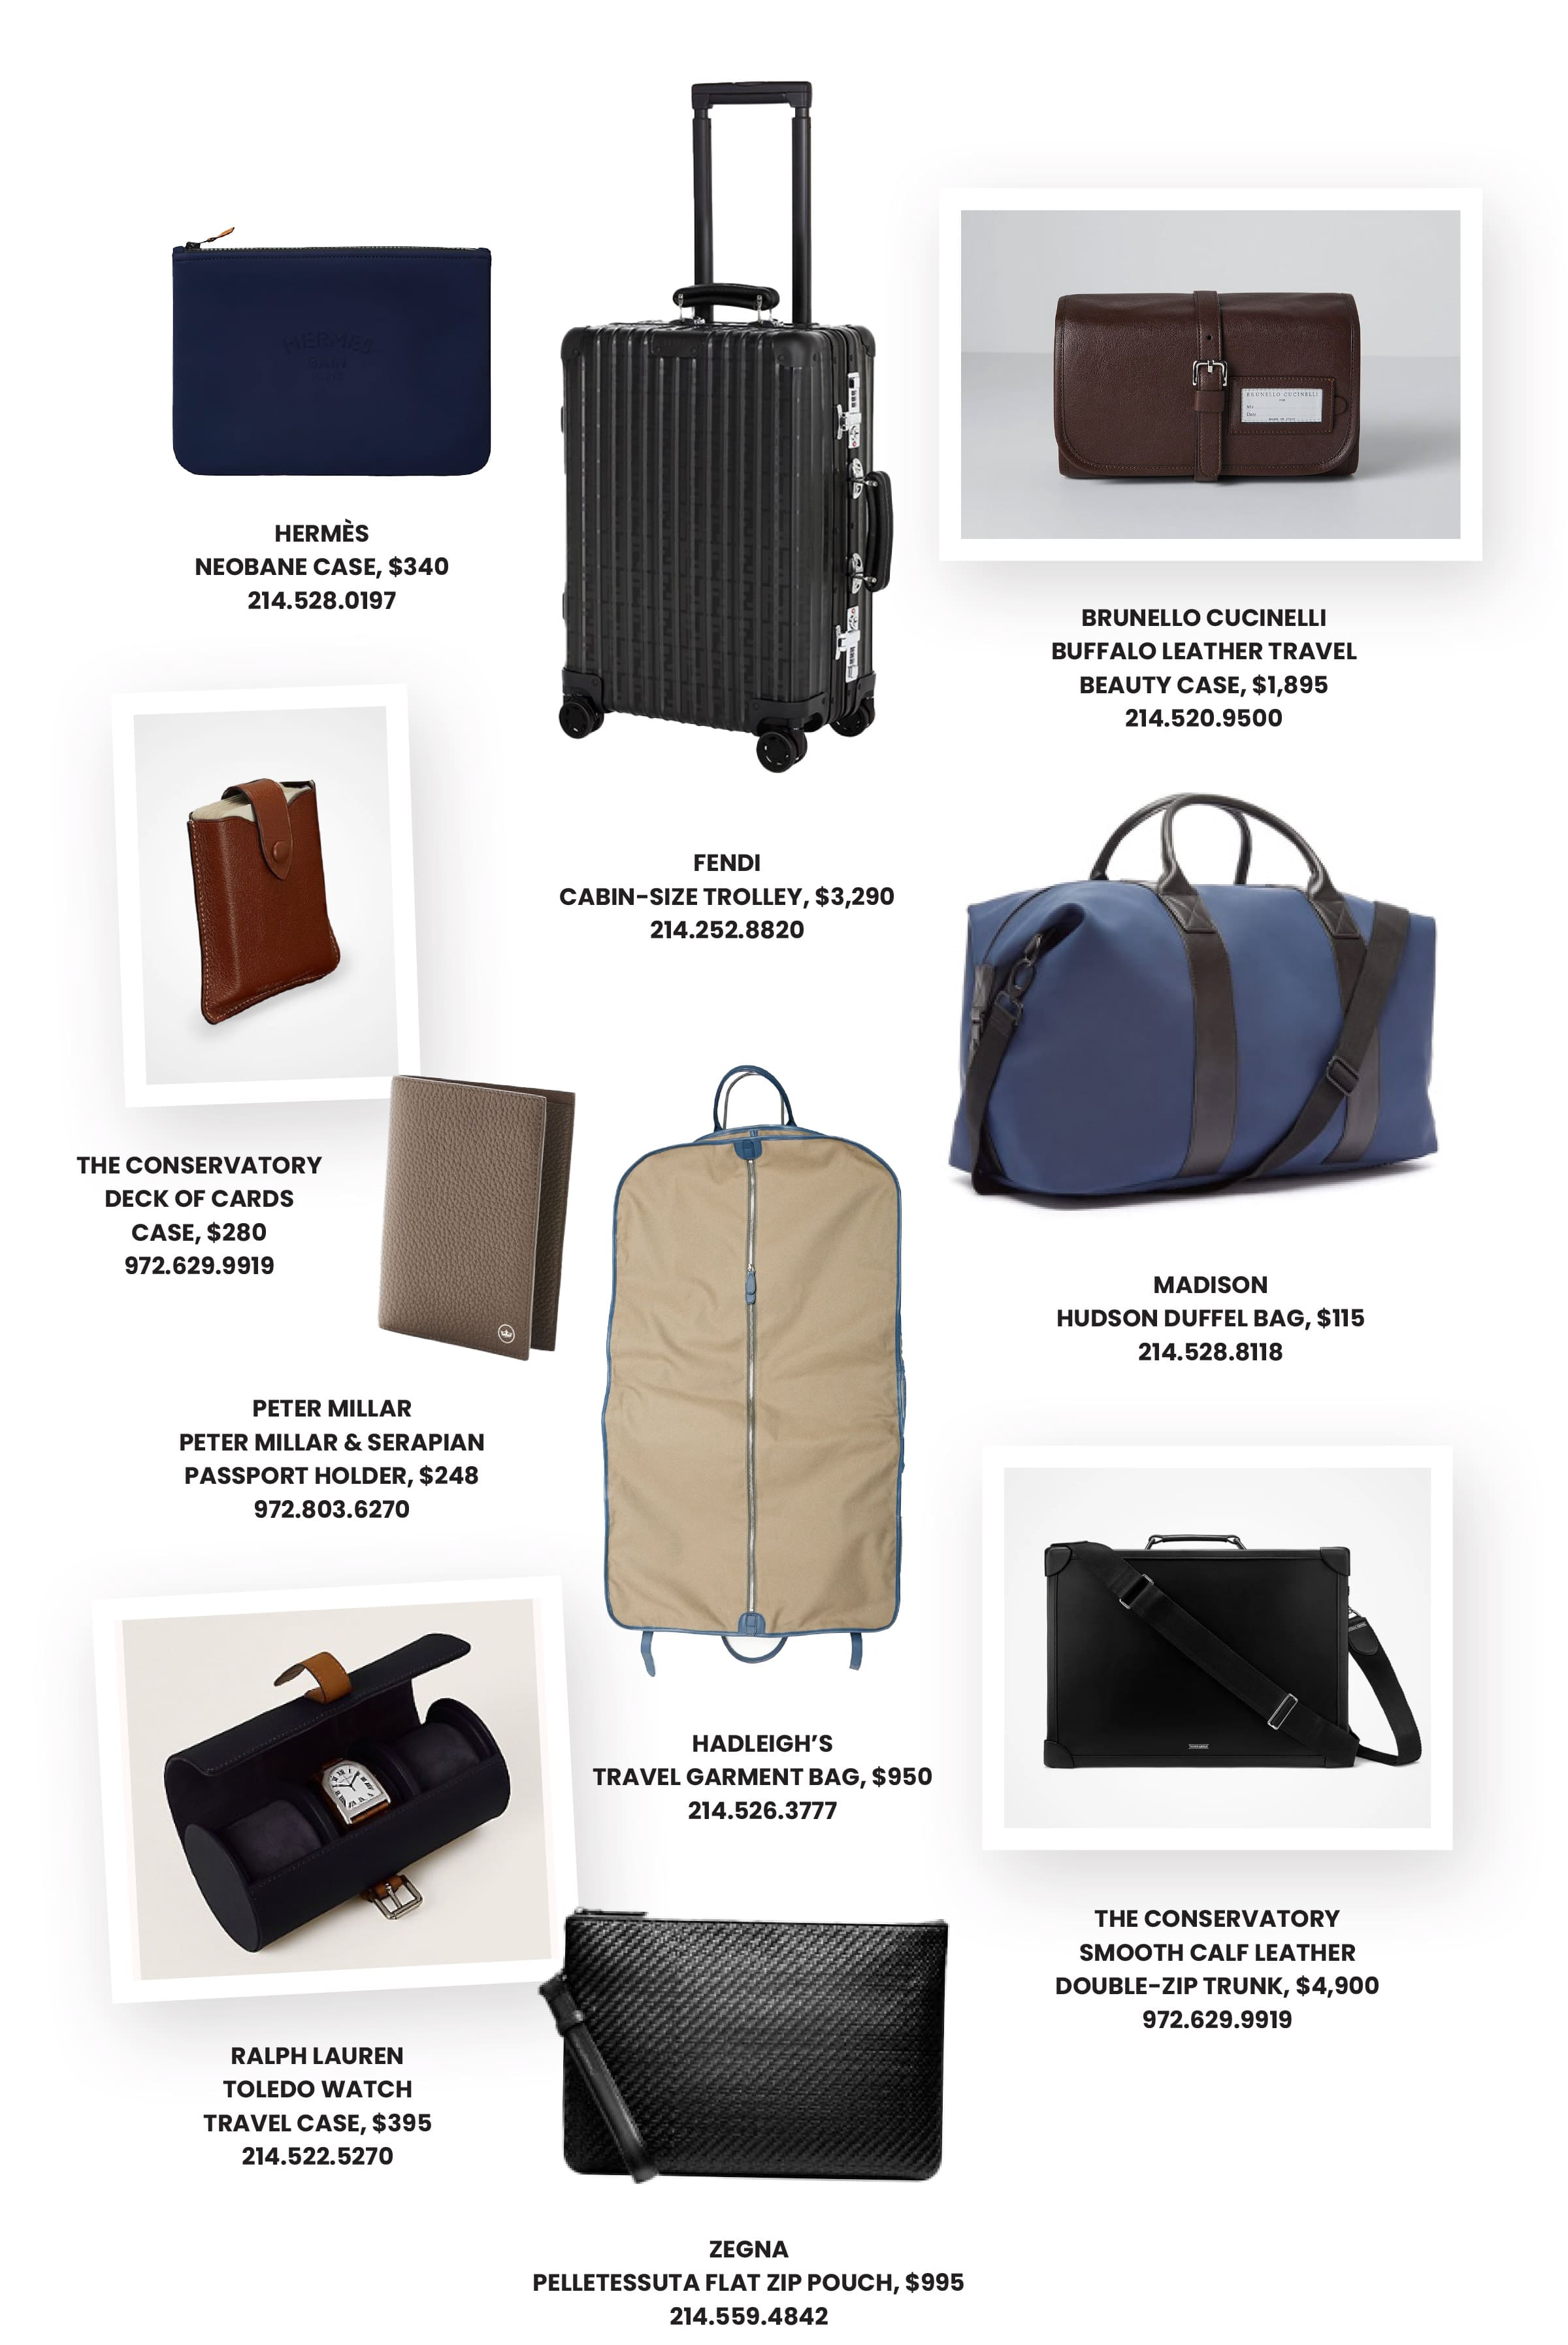 他的旅行必備品包括 Fendi 手提箱、Hadleigh 的服裝包、設計師行李袋和 Peter Millar 護照箱。